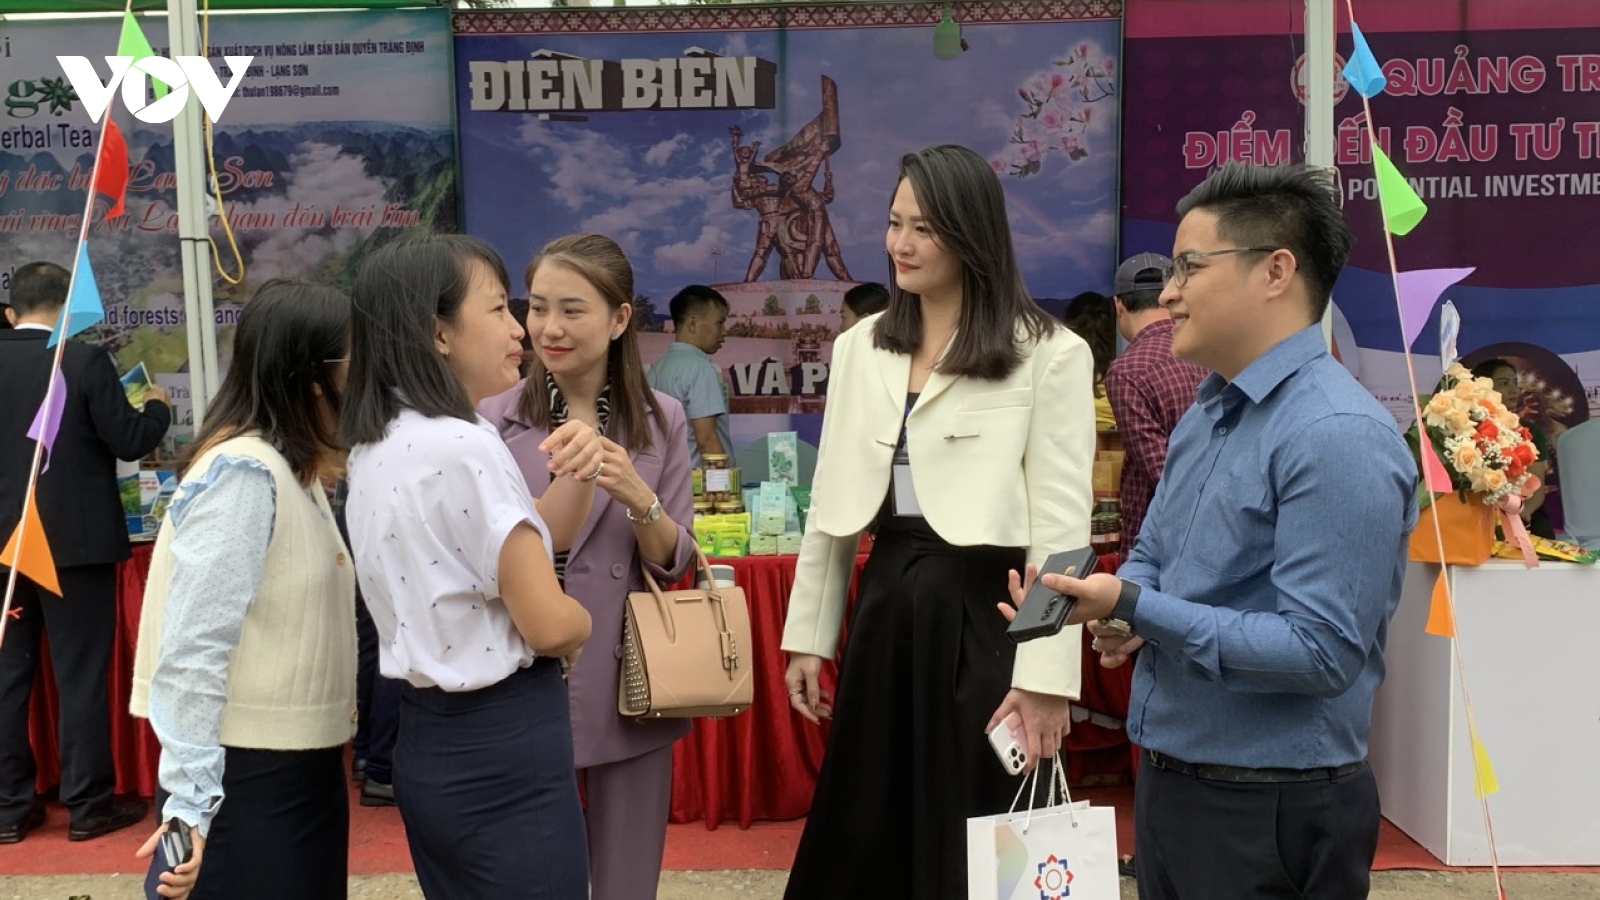 Hội nghị “Gặp gỡ Thái Lan” tại tỉnh Quảng Trị